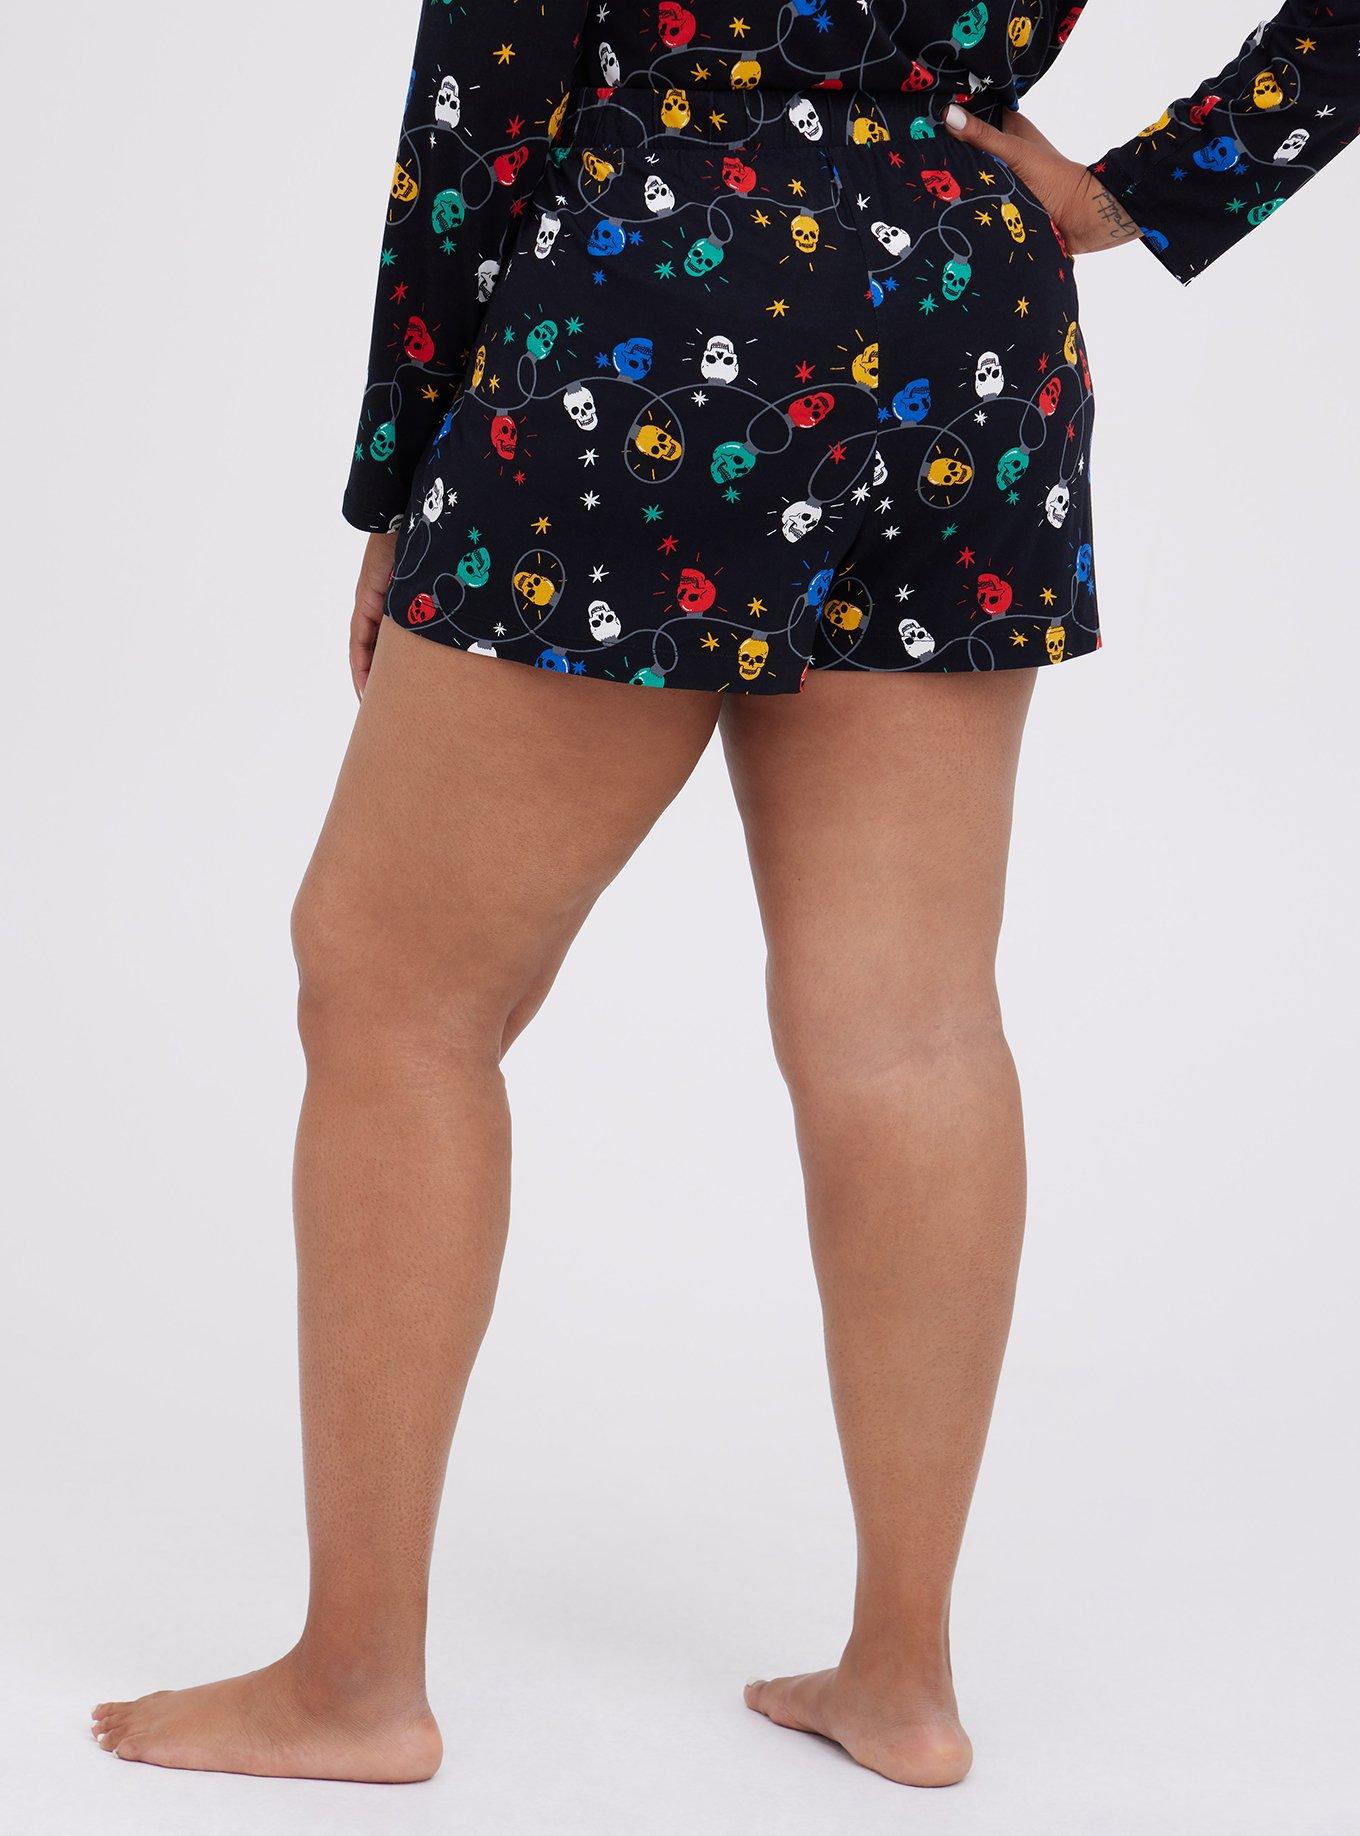 Torrid Skeleton Super Soft Sleep Pajama Shorts Black Size 1X - $30 - From  Emily